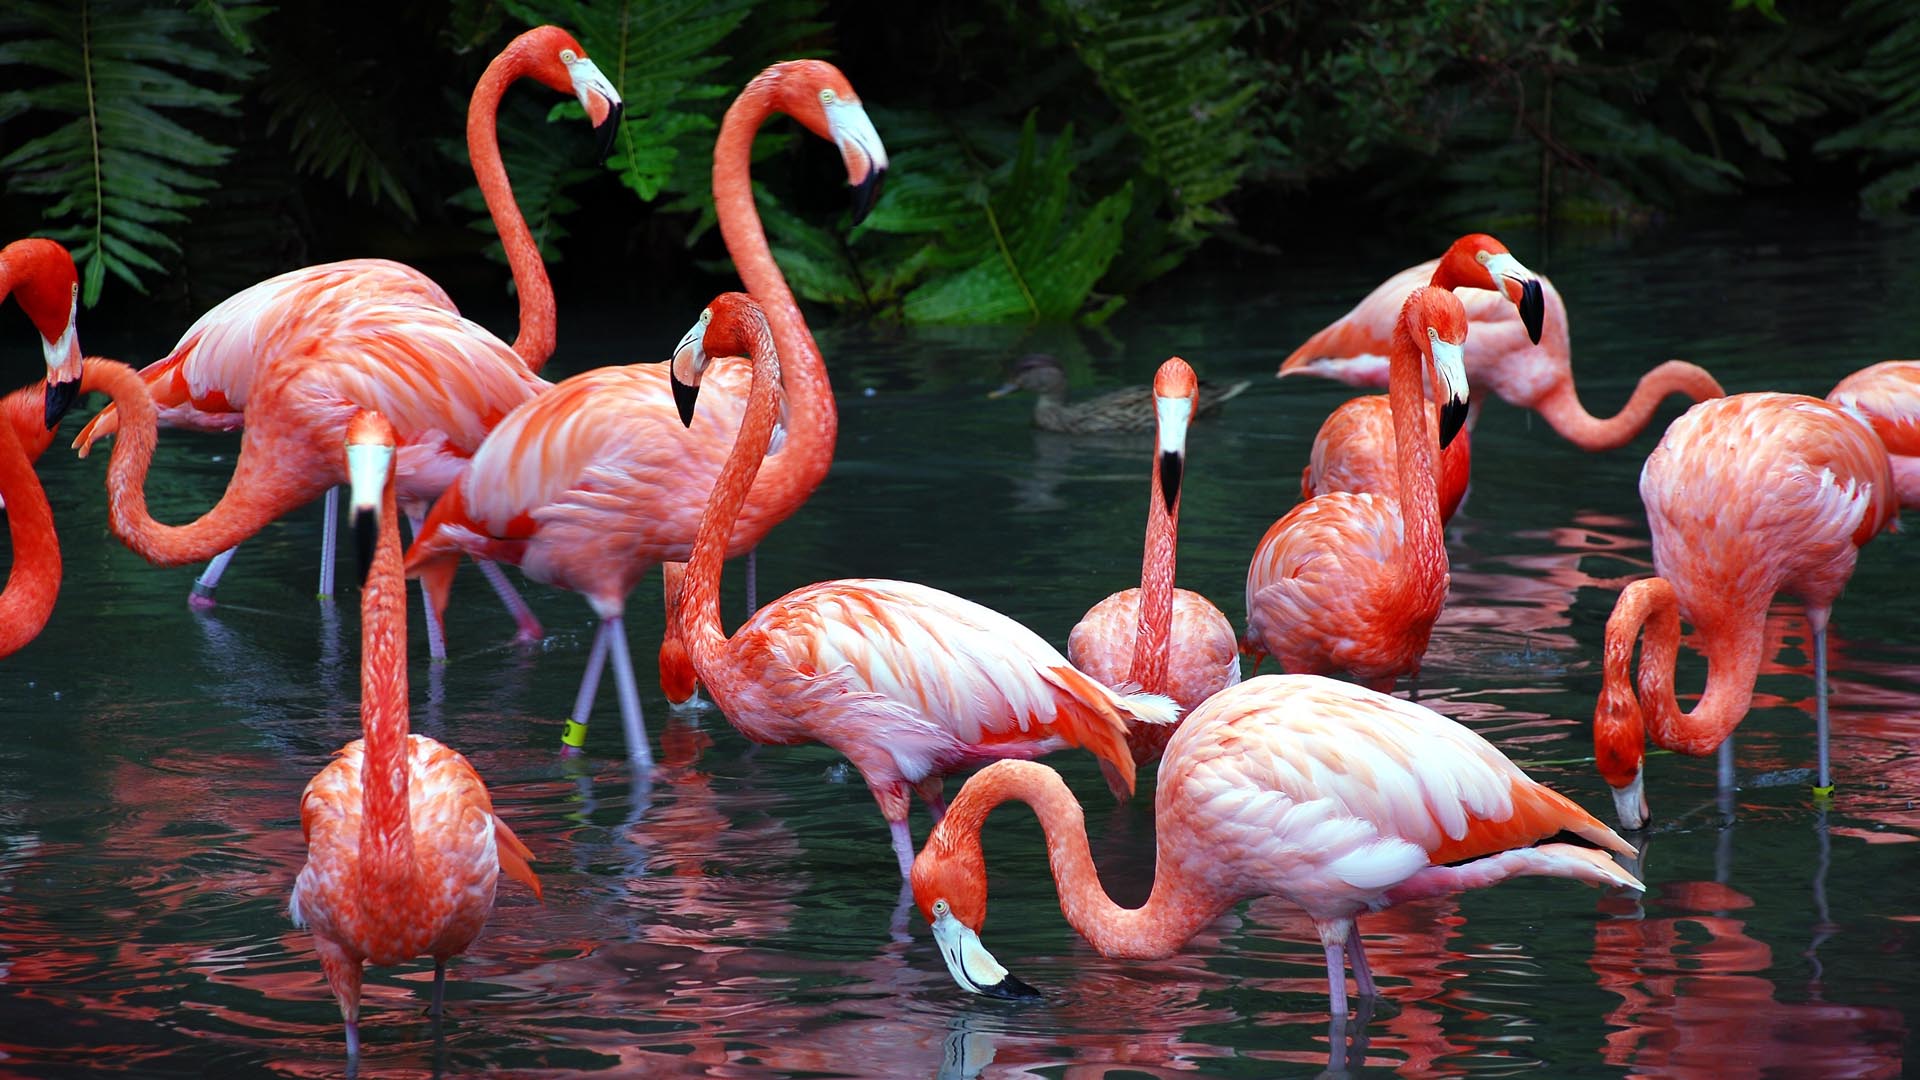 Los flamencos prefieren buscar una pareja de color rosa profundo al momento de aparearse